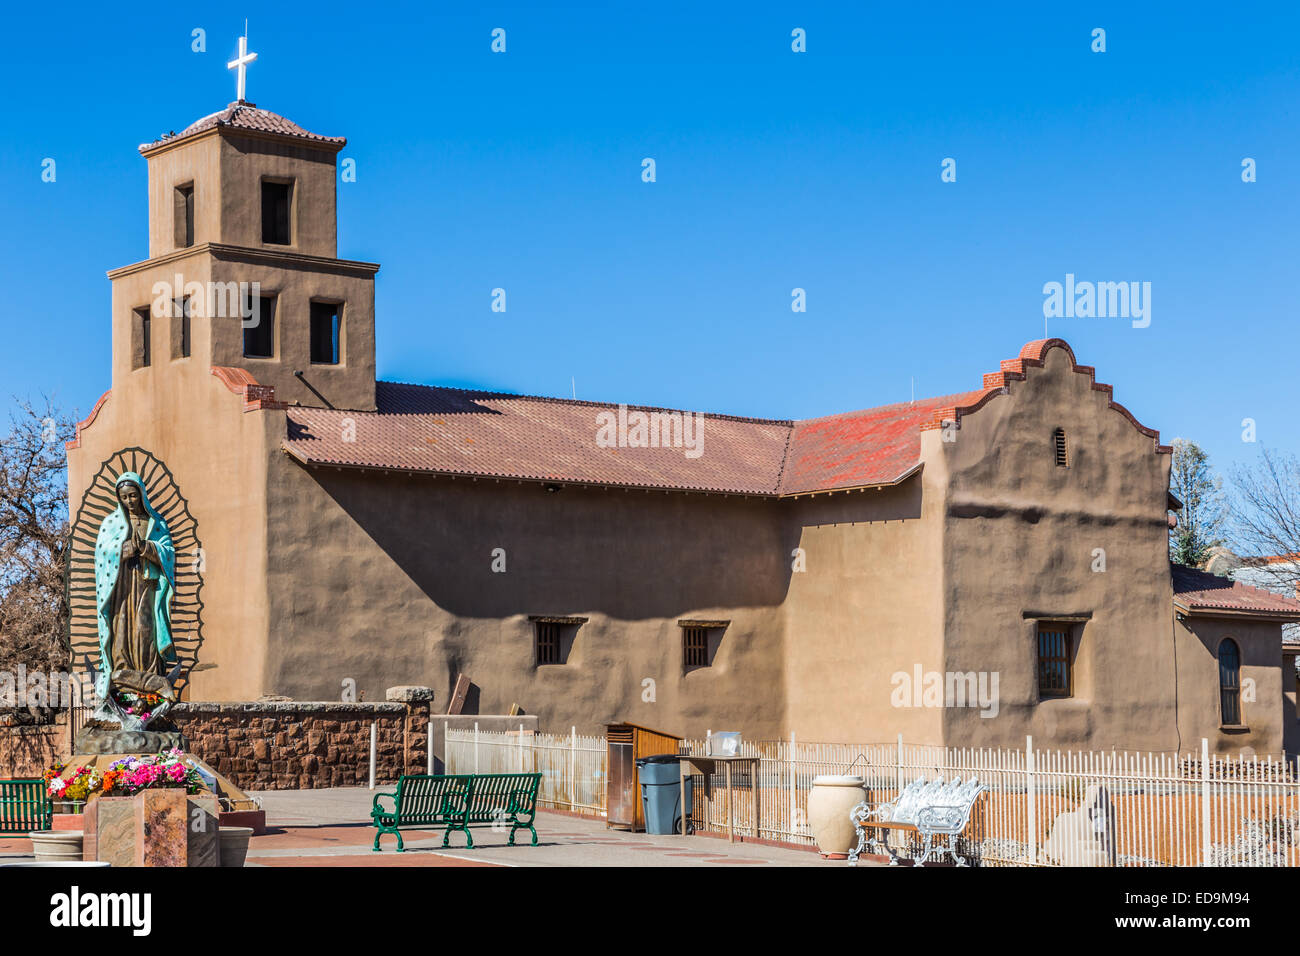 Santuario de Guadalupe, Santa Fe, Nouveau Mexique Banque D'Images